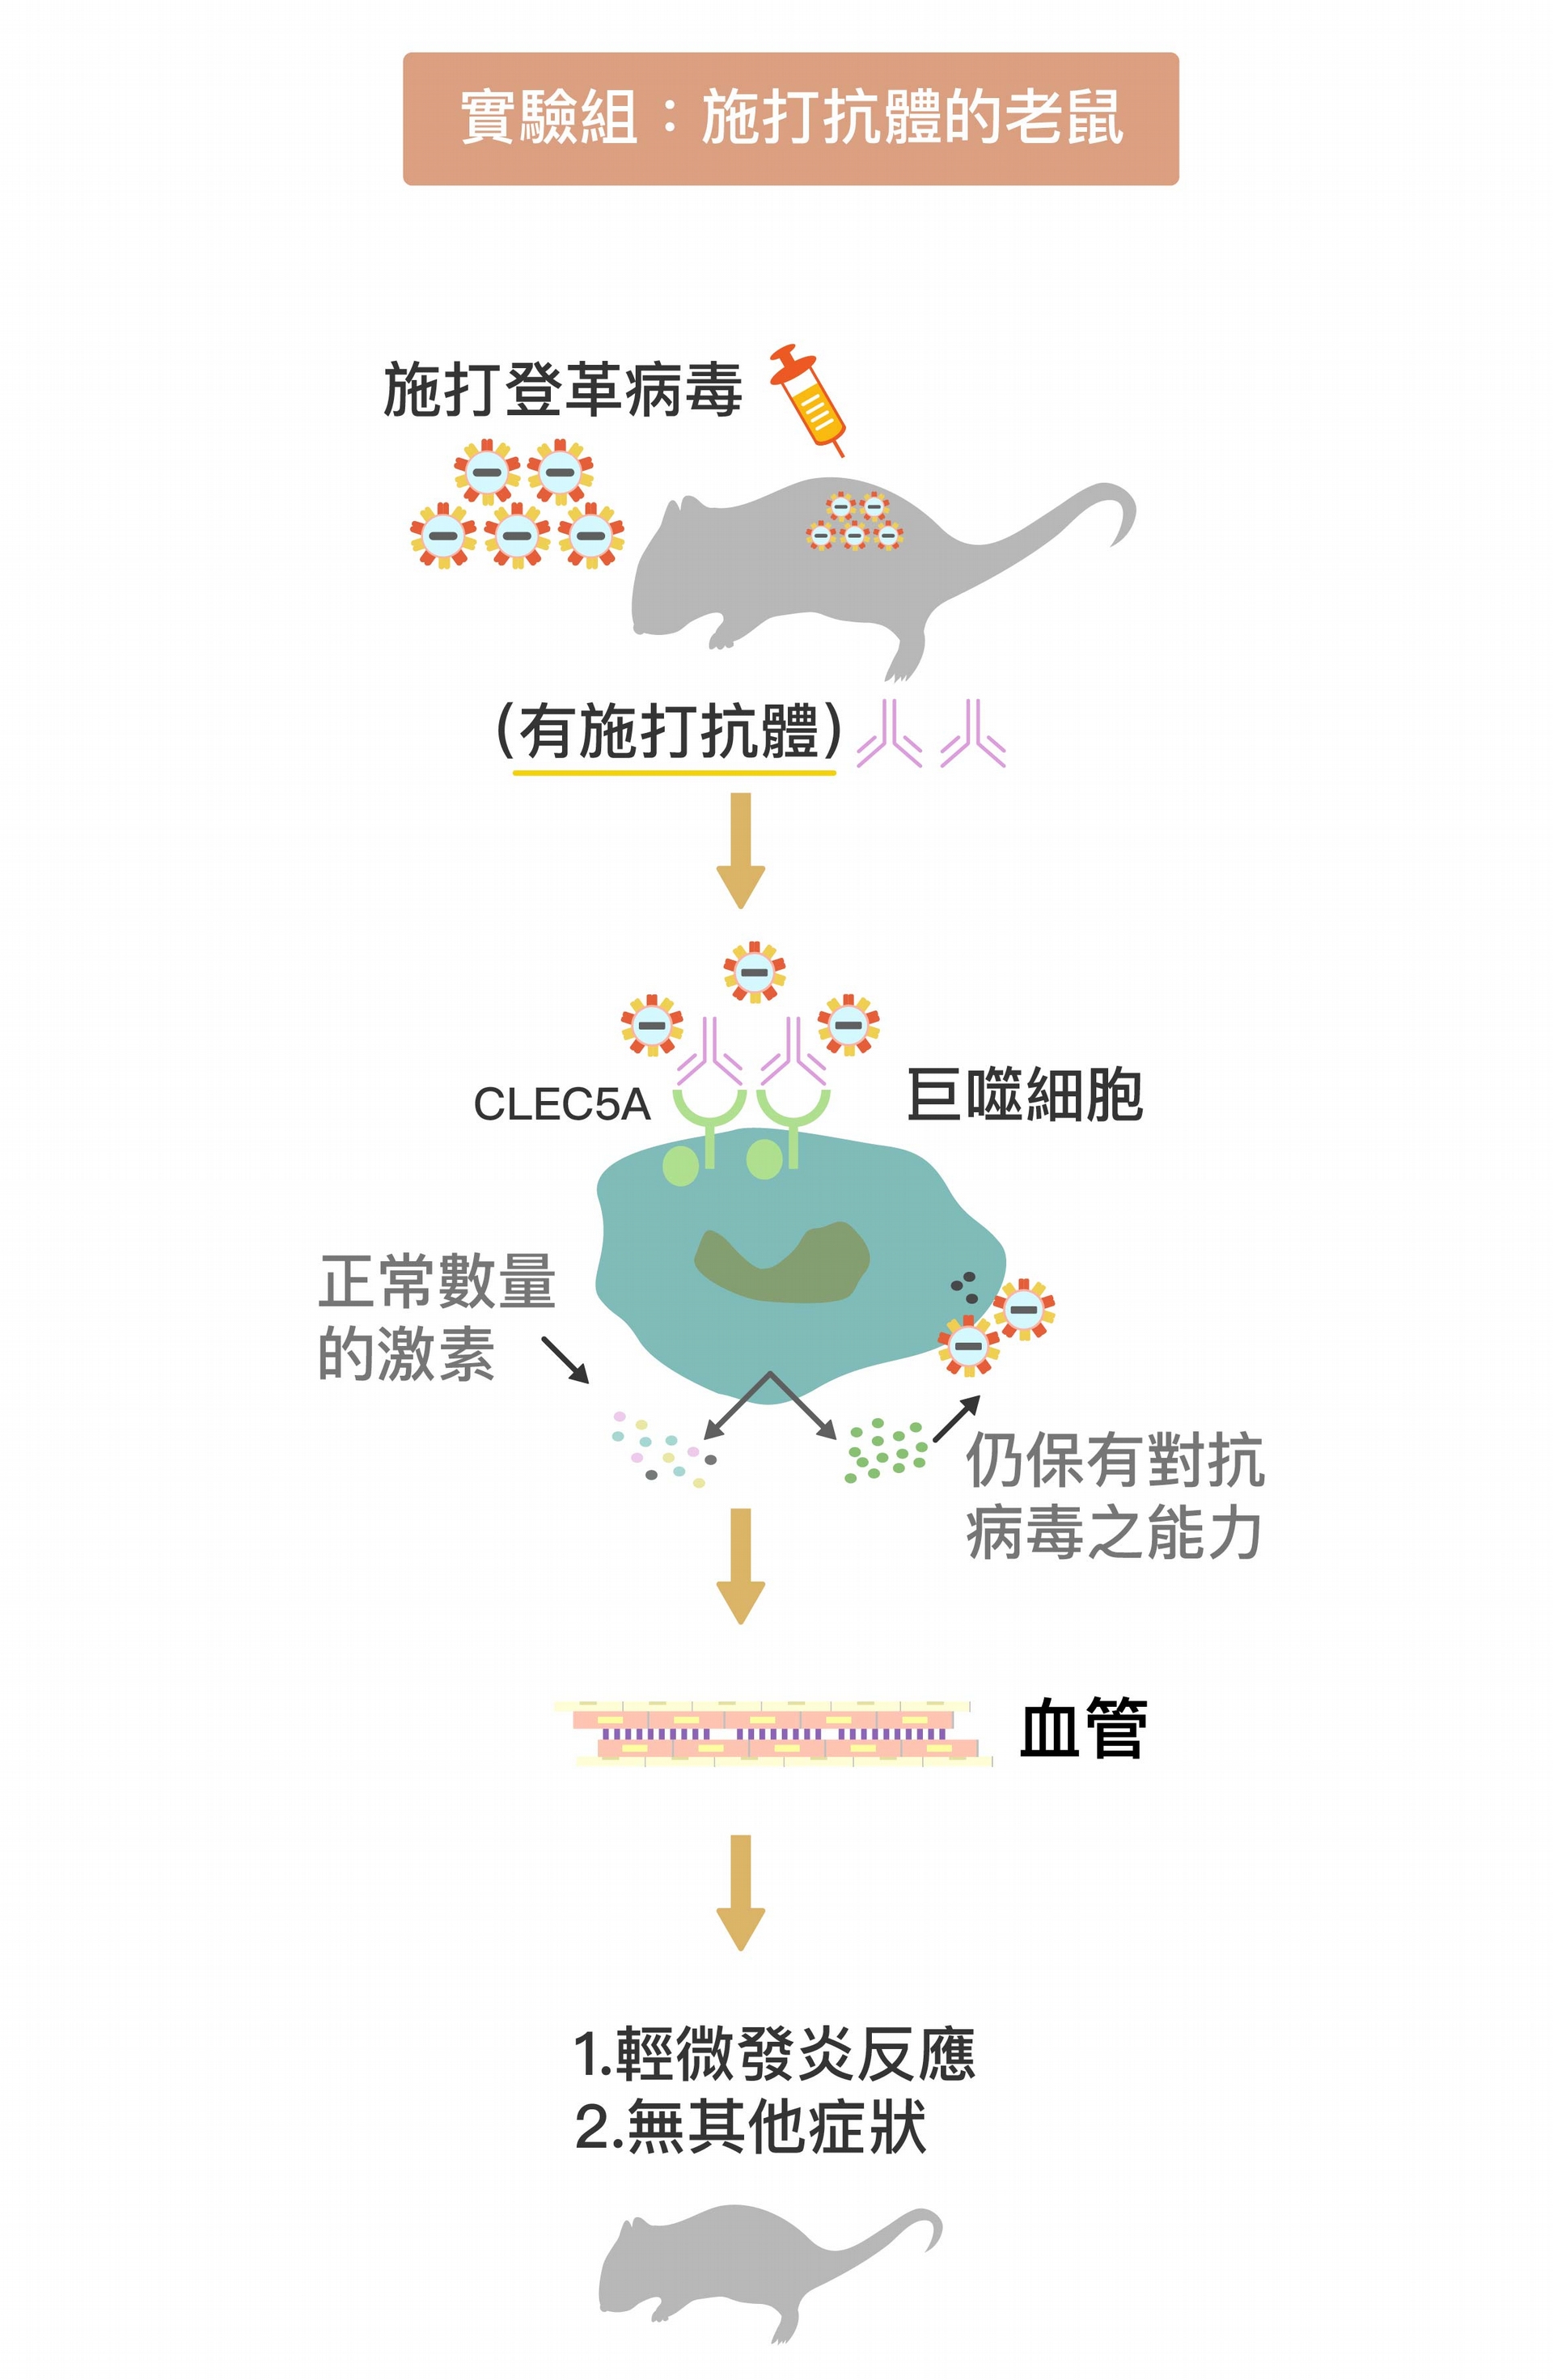 被施打 CLEC5A 拮抗性抗體 (圖中粉紫色抗體)後，巨噬細胞上的 CLEC5A 受器被抗體佔據，不會與登革病毒結合。巨噬細胞因此不會產生過量細胞素、導致細胞素風暴，卻能持續產生干擾素消滅病毒。在抗體保護下，小鼠保持正常的血管通透性，不會產生登革出血熱症狀。 資料來源│謝世良 圖說重製│林任遠、張語辰 